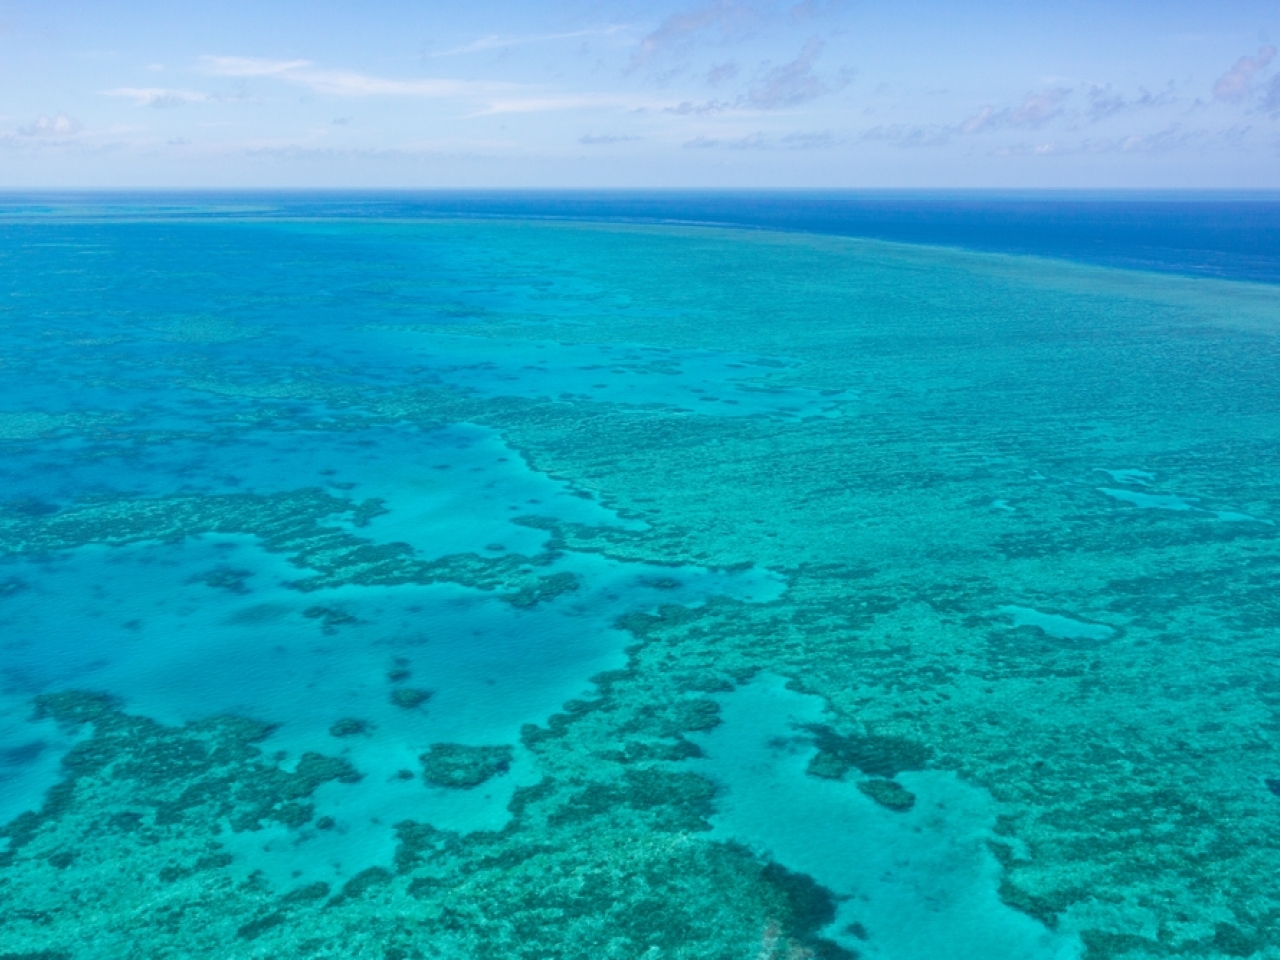 高溫破壞大堡礁北部67%珊瑚死亡